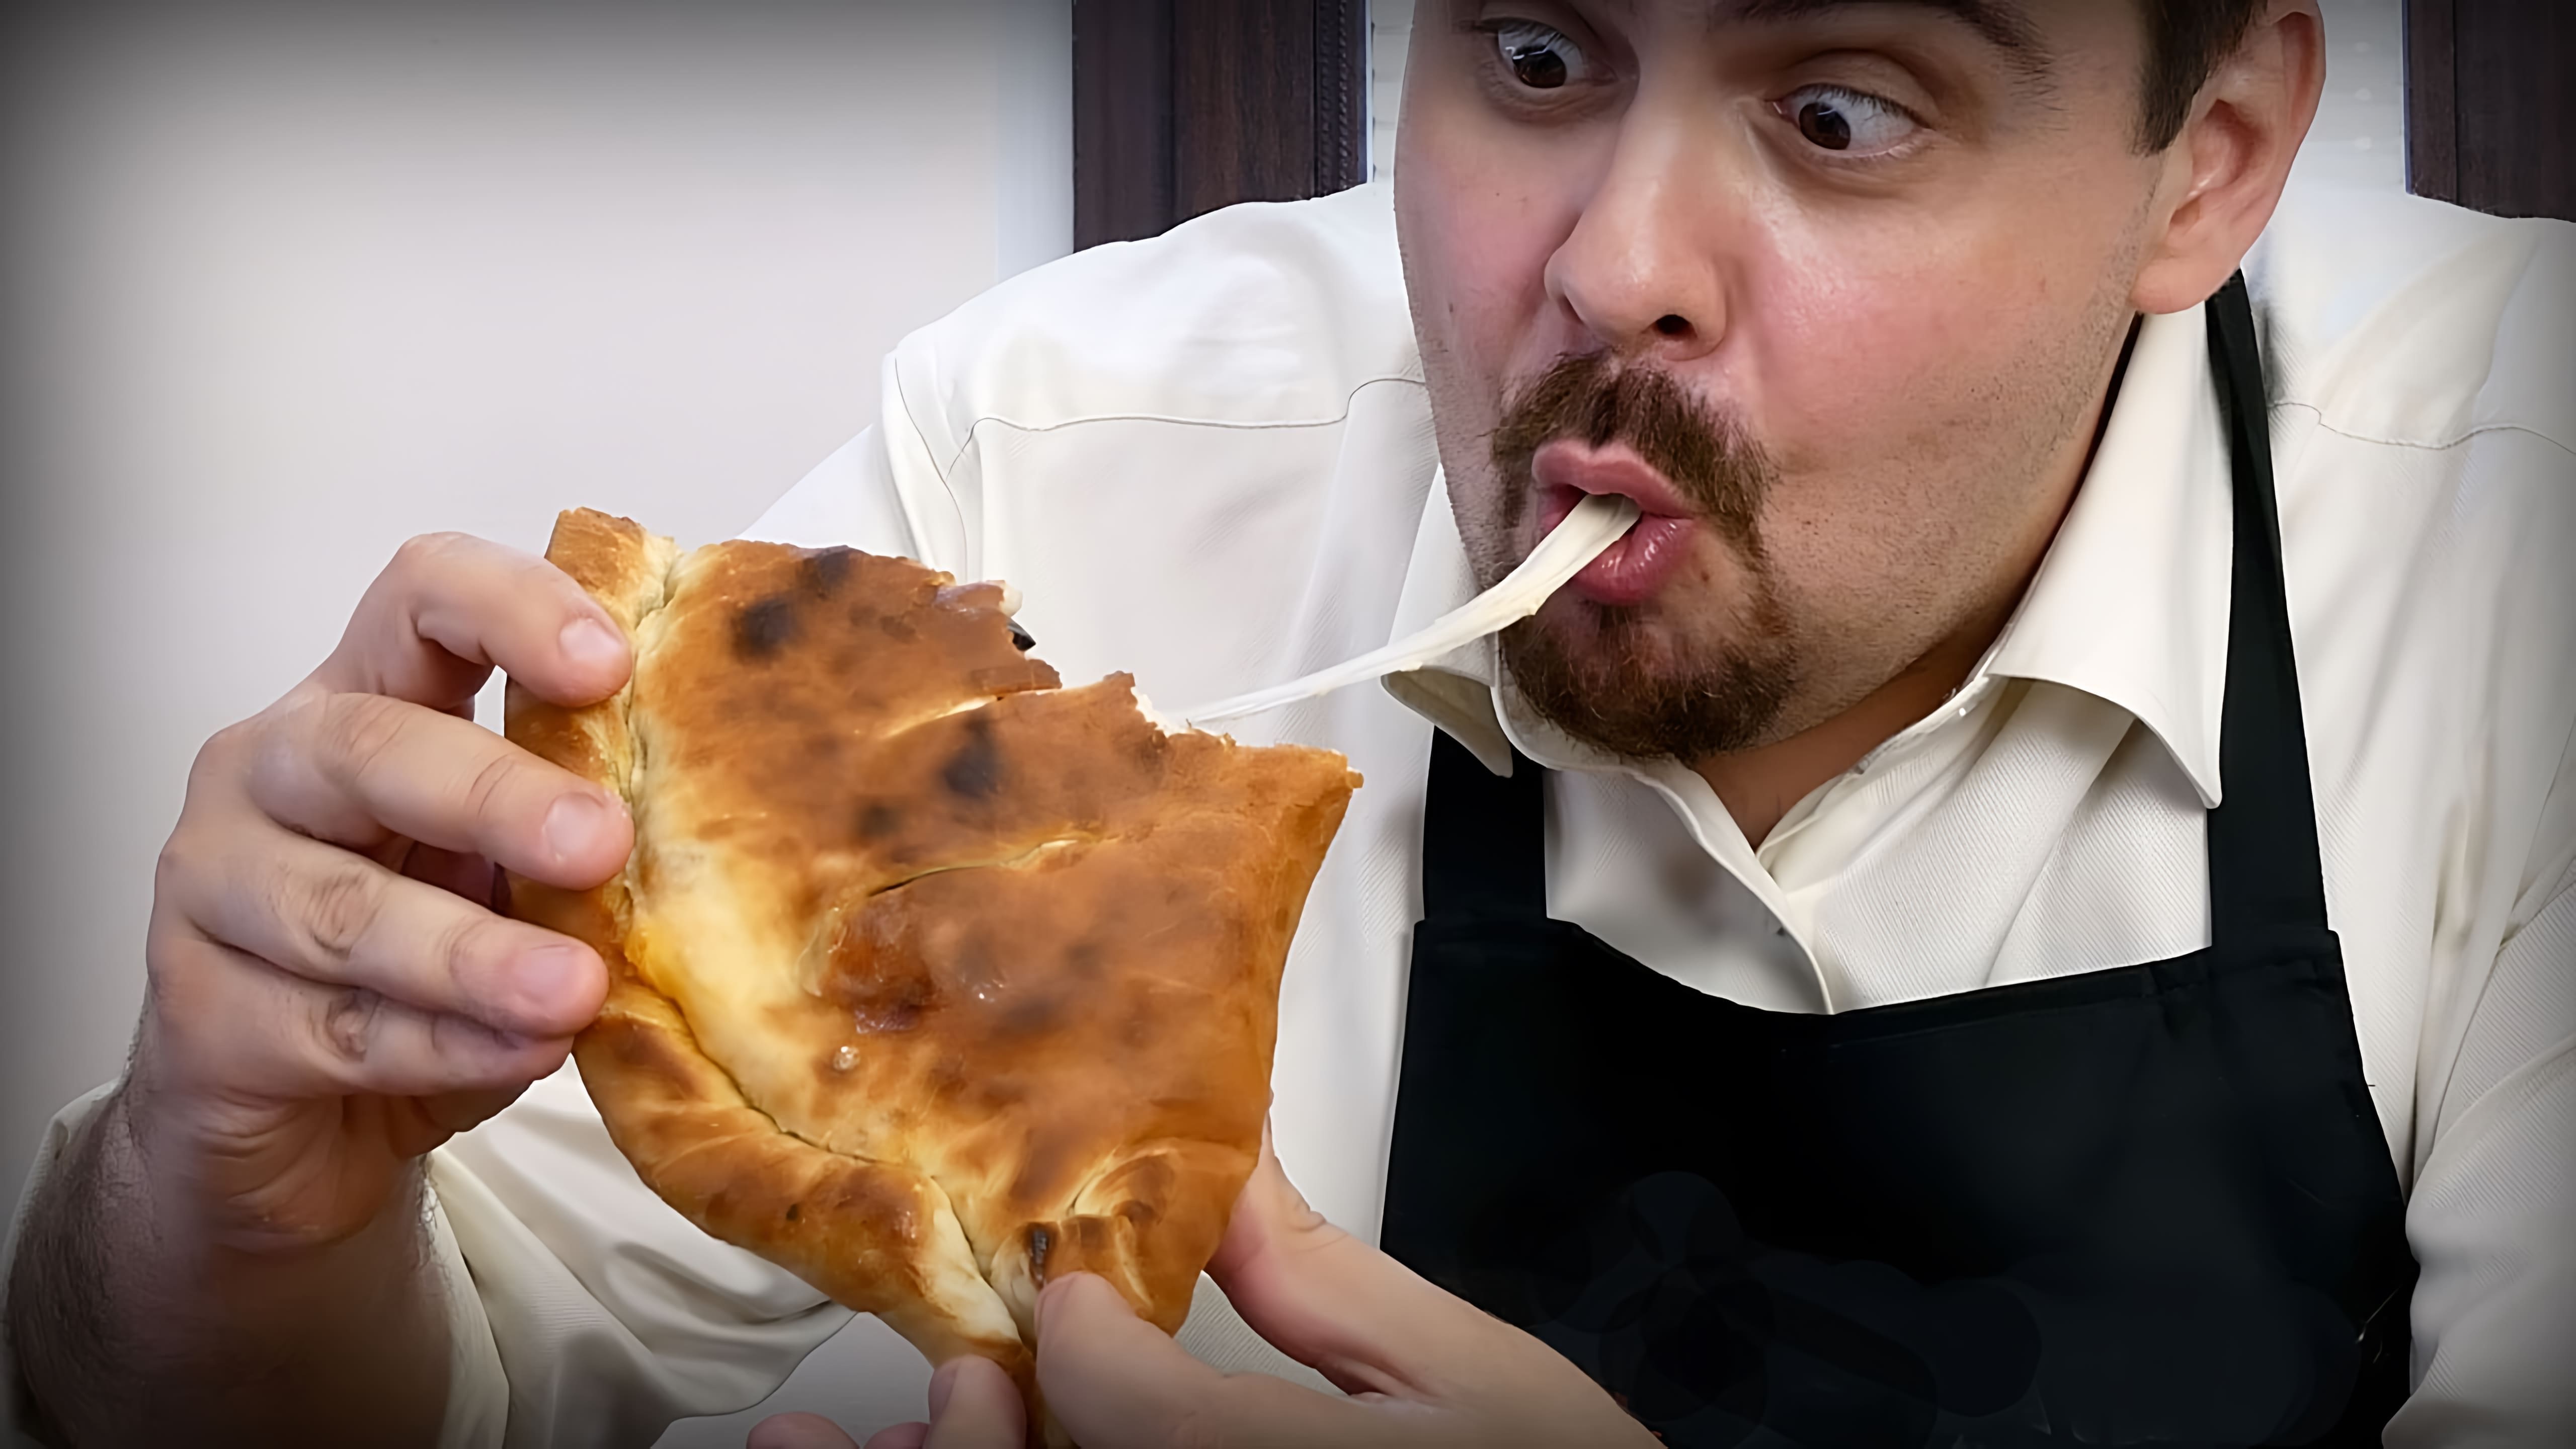 В этом видео показано, как приготовить пиццу кальцоне в домашних условиях